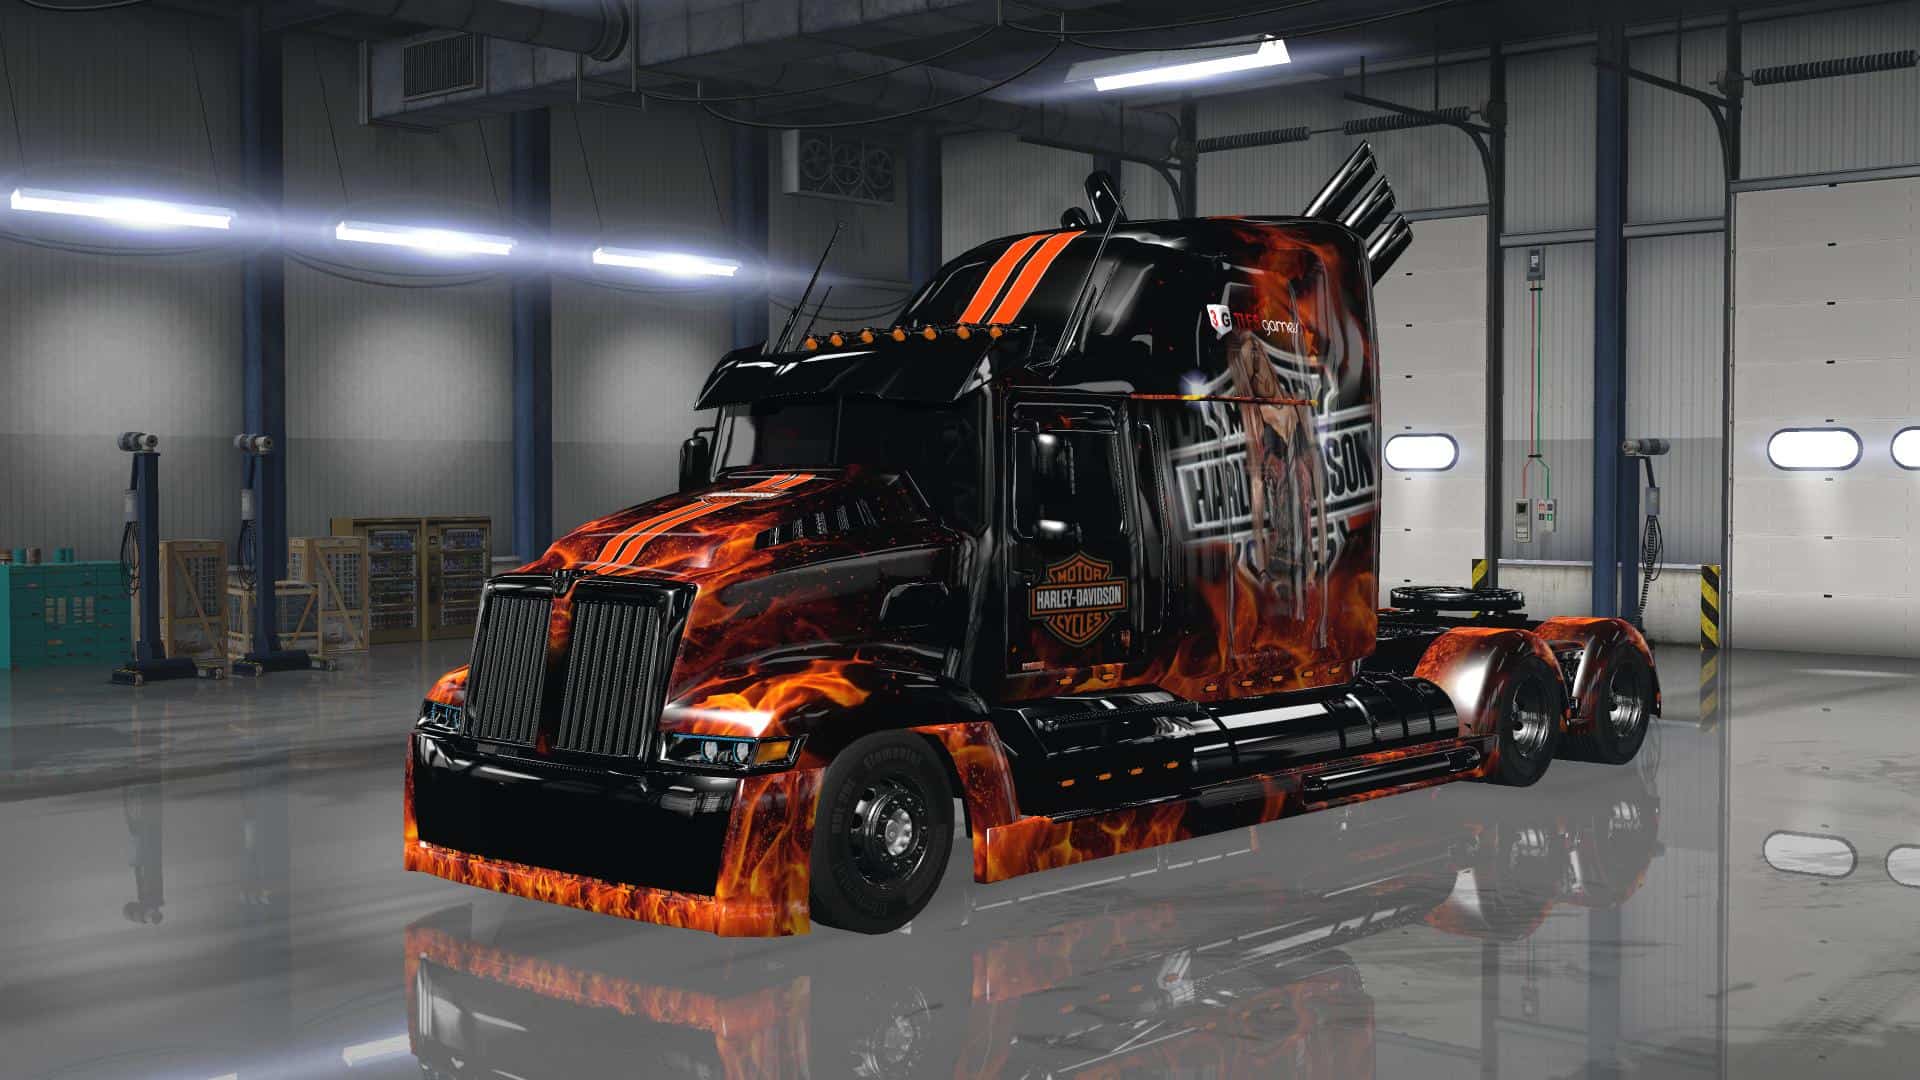 Optimus Prime Truck Wallpapers